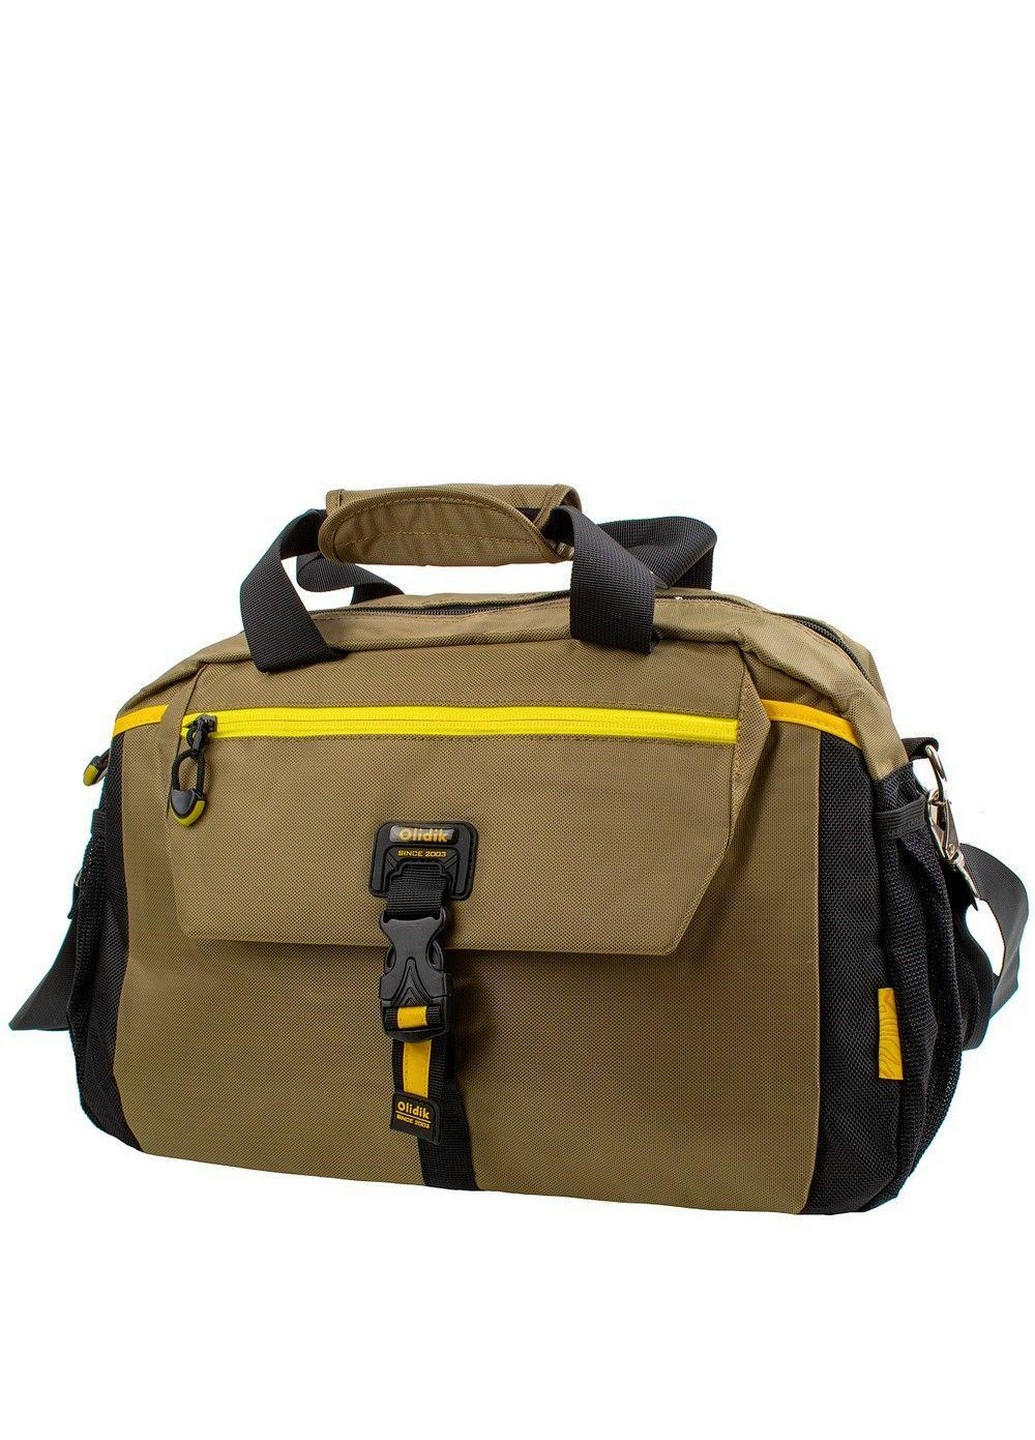 Дорожная сумка мужская 39х26х16 см Valiria Fashion (216745610)